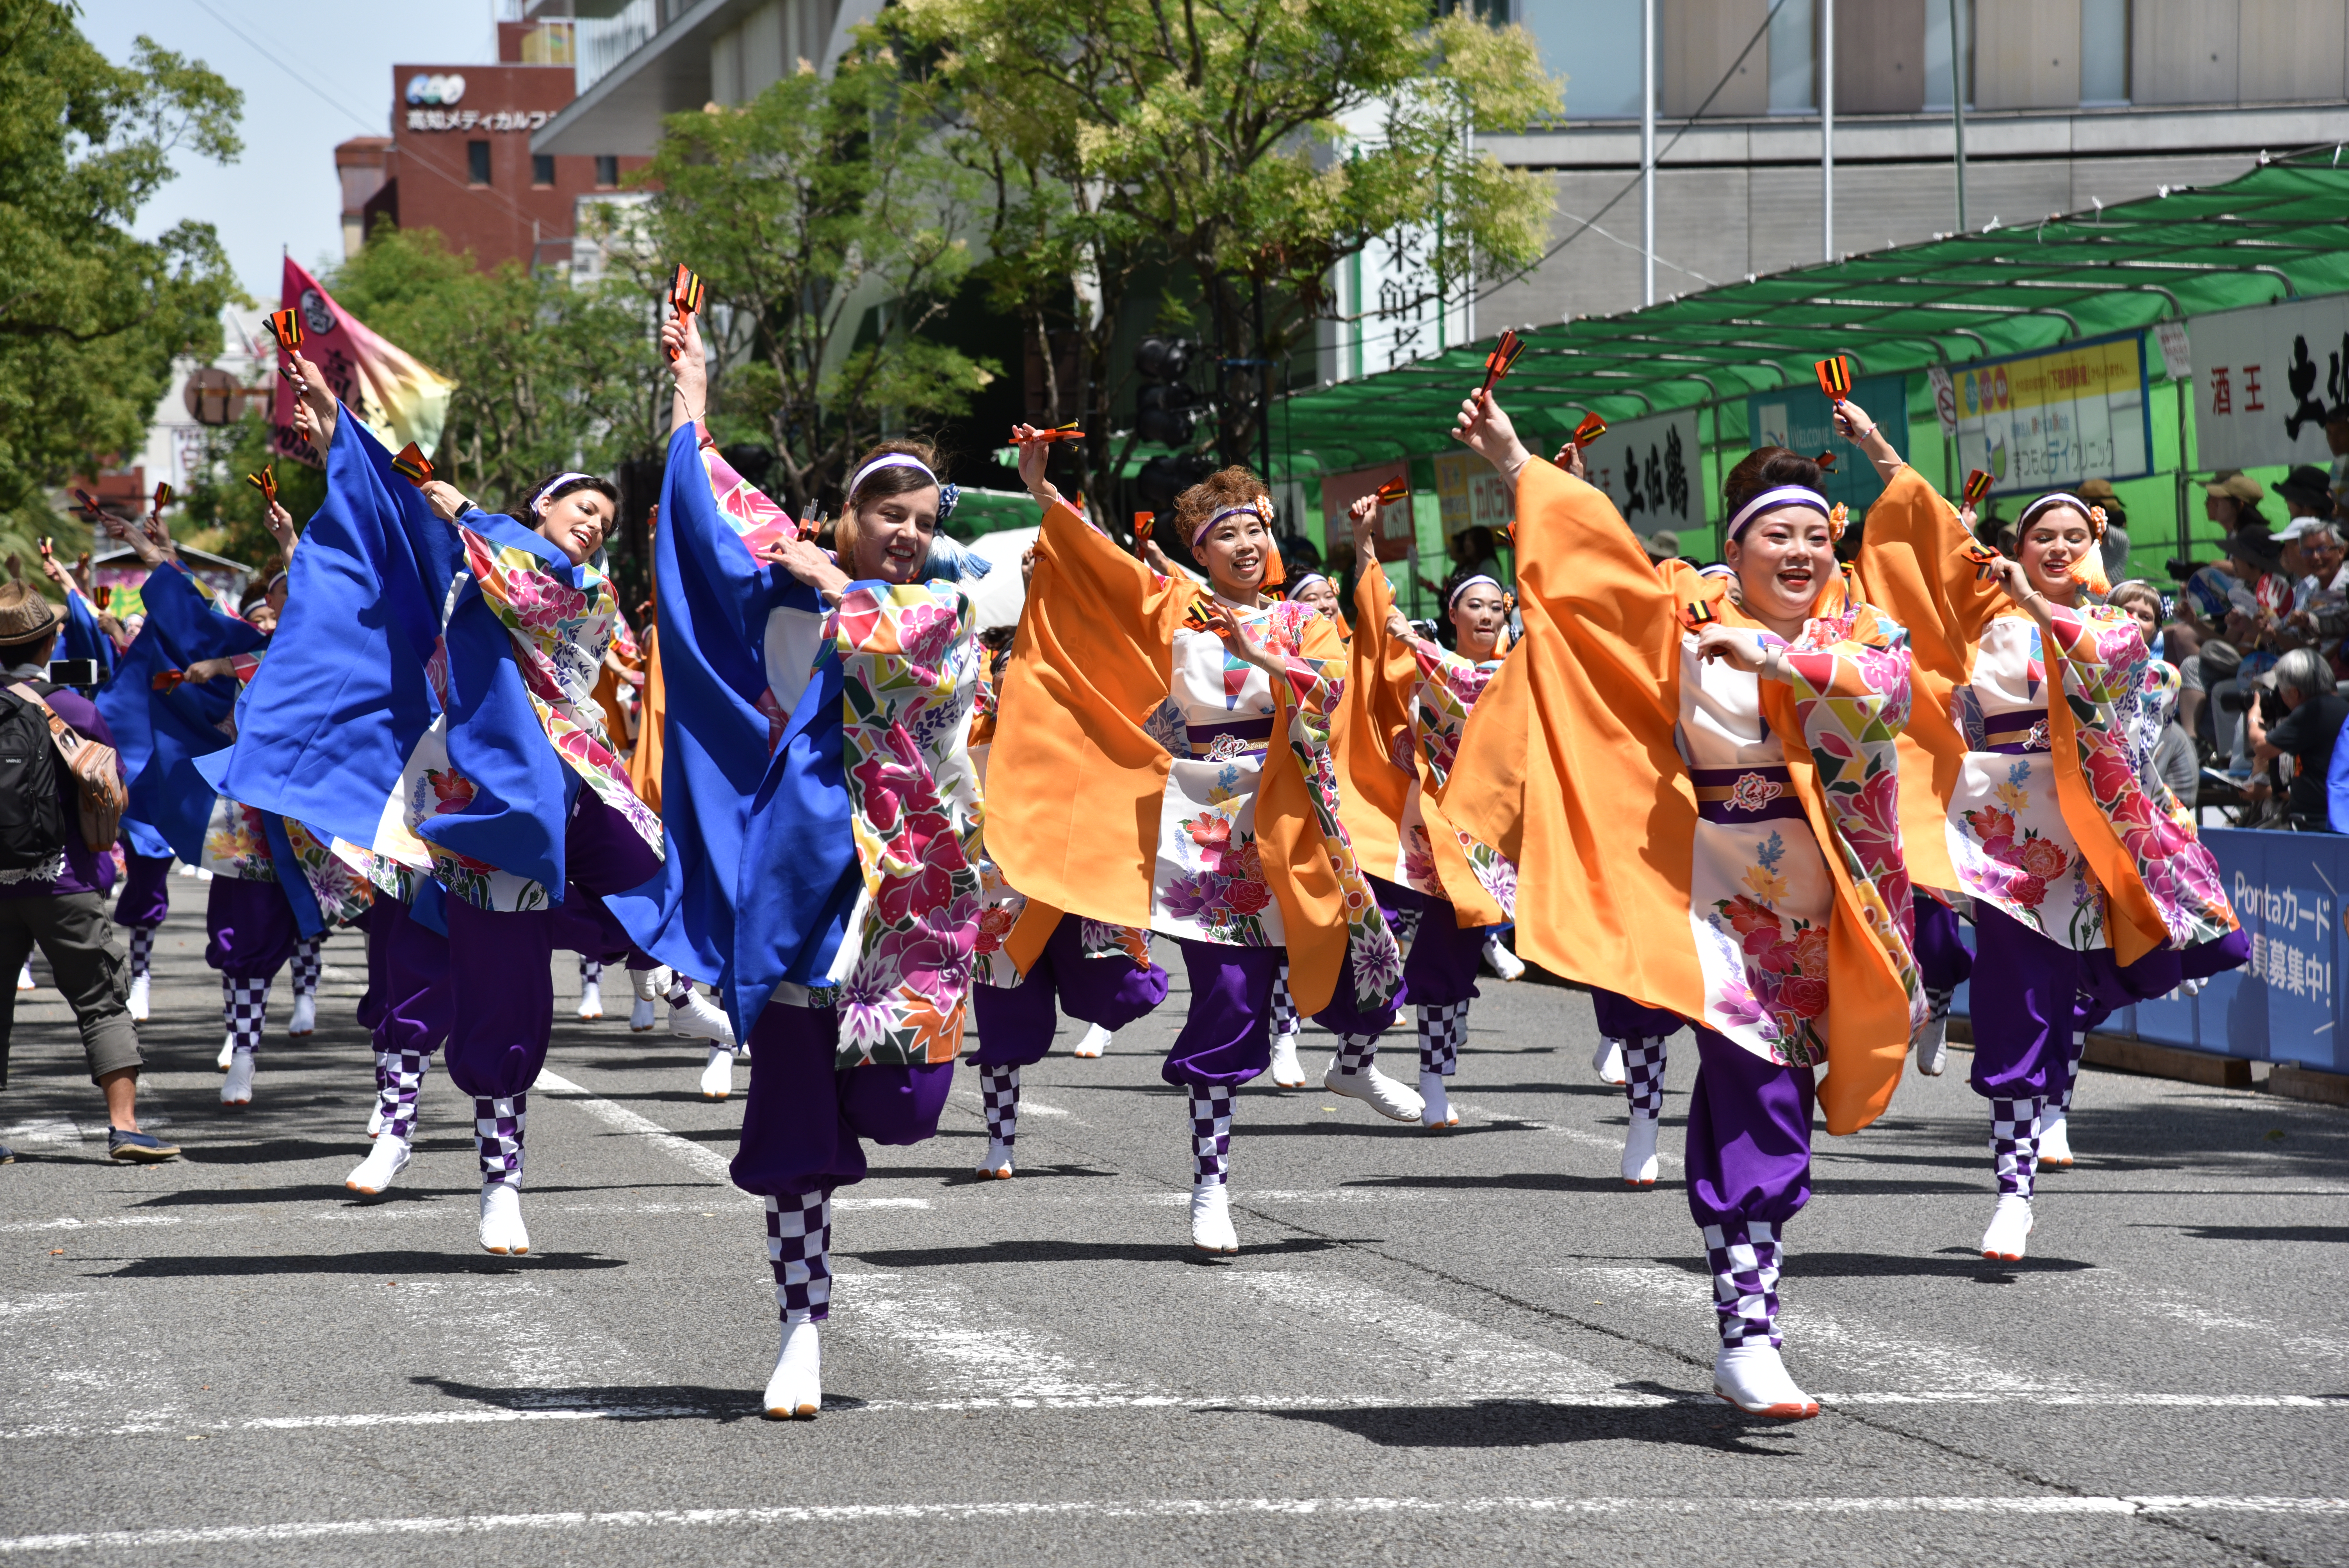 世界27の国 地域の人々も舞い踊る 南国土佐 高知の街が よさこい の熱気に包まれる4日間 Ovo オーヴォ